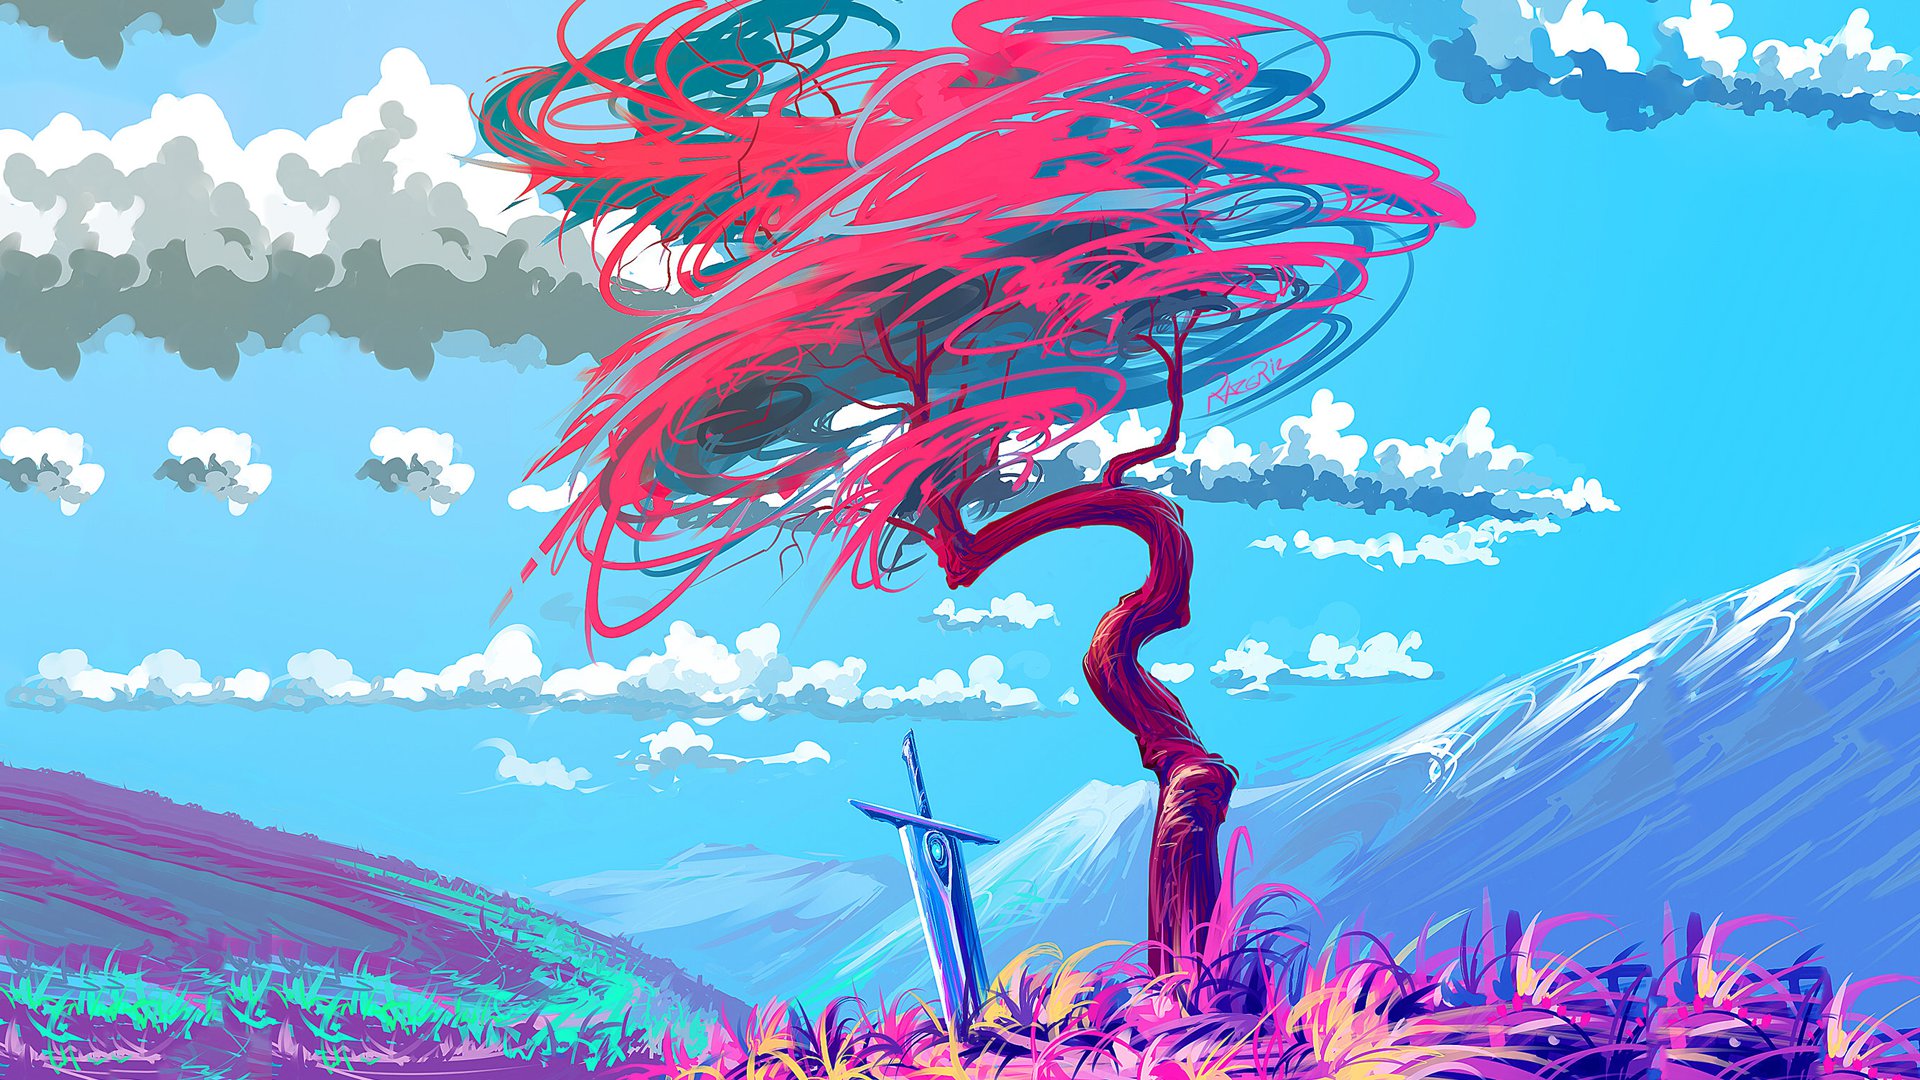 Sword Flower Fantasy Art - HD Wallpaper 